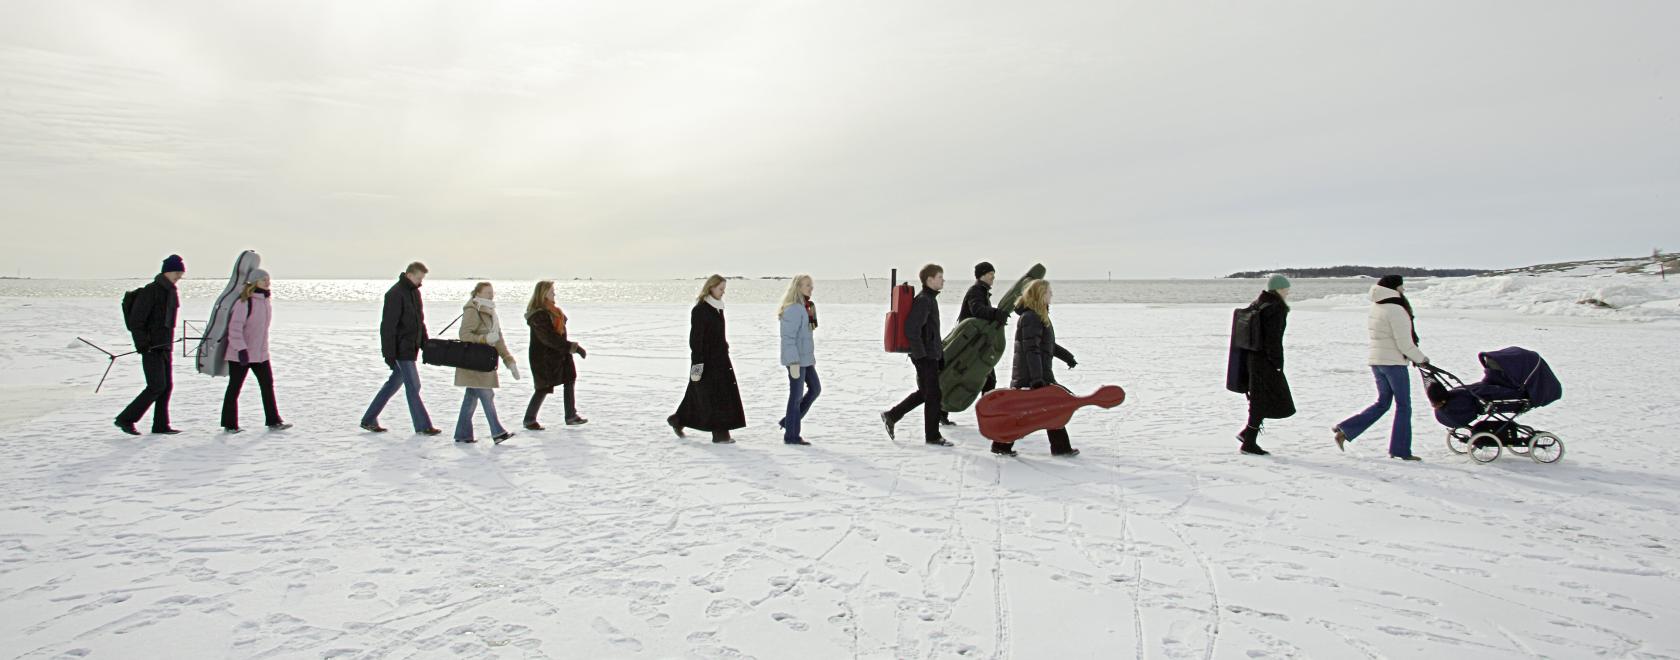 Ihmisiä kävelee jonossa jäällä lumisessa, valkoisessa maisemassa.